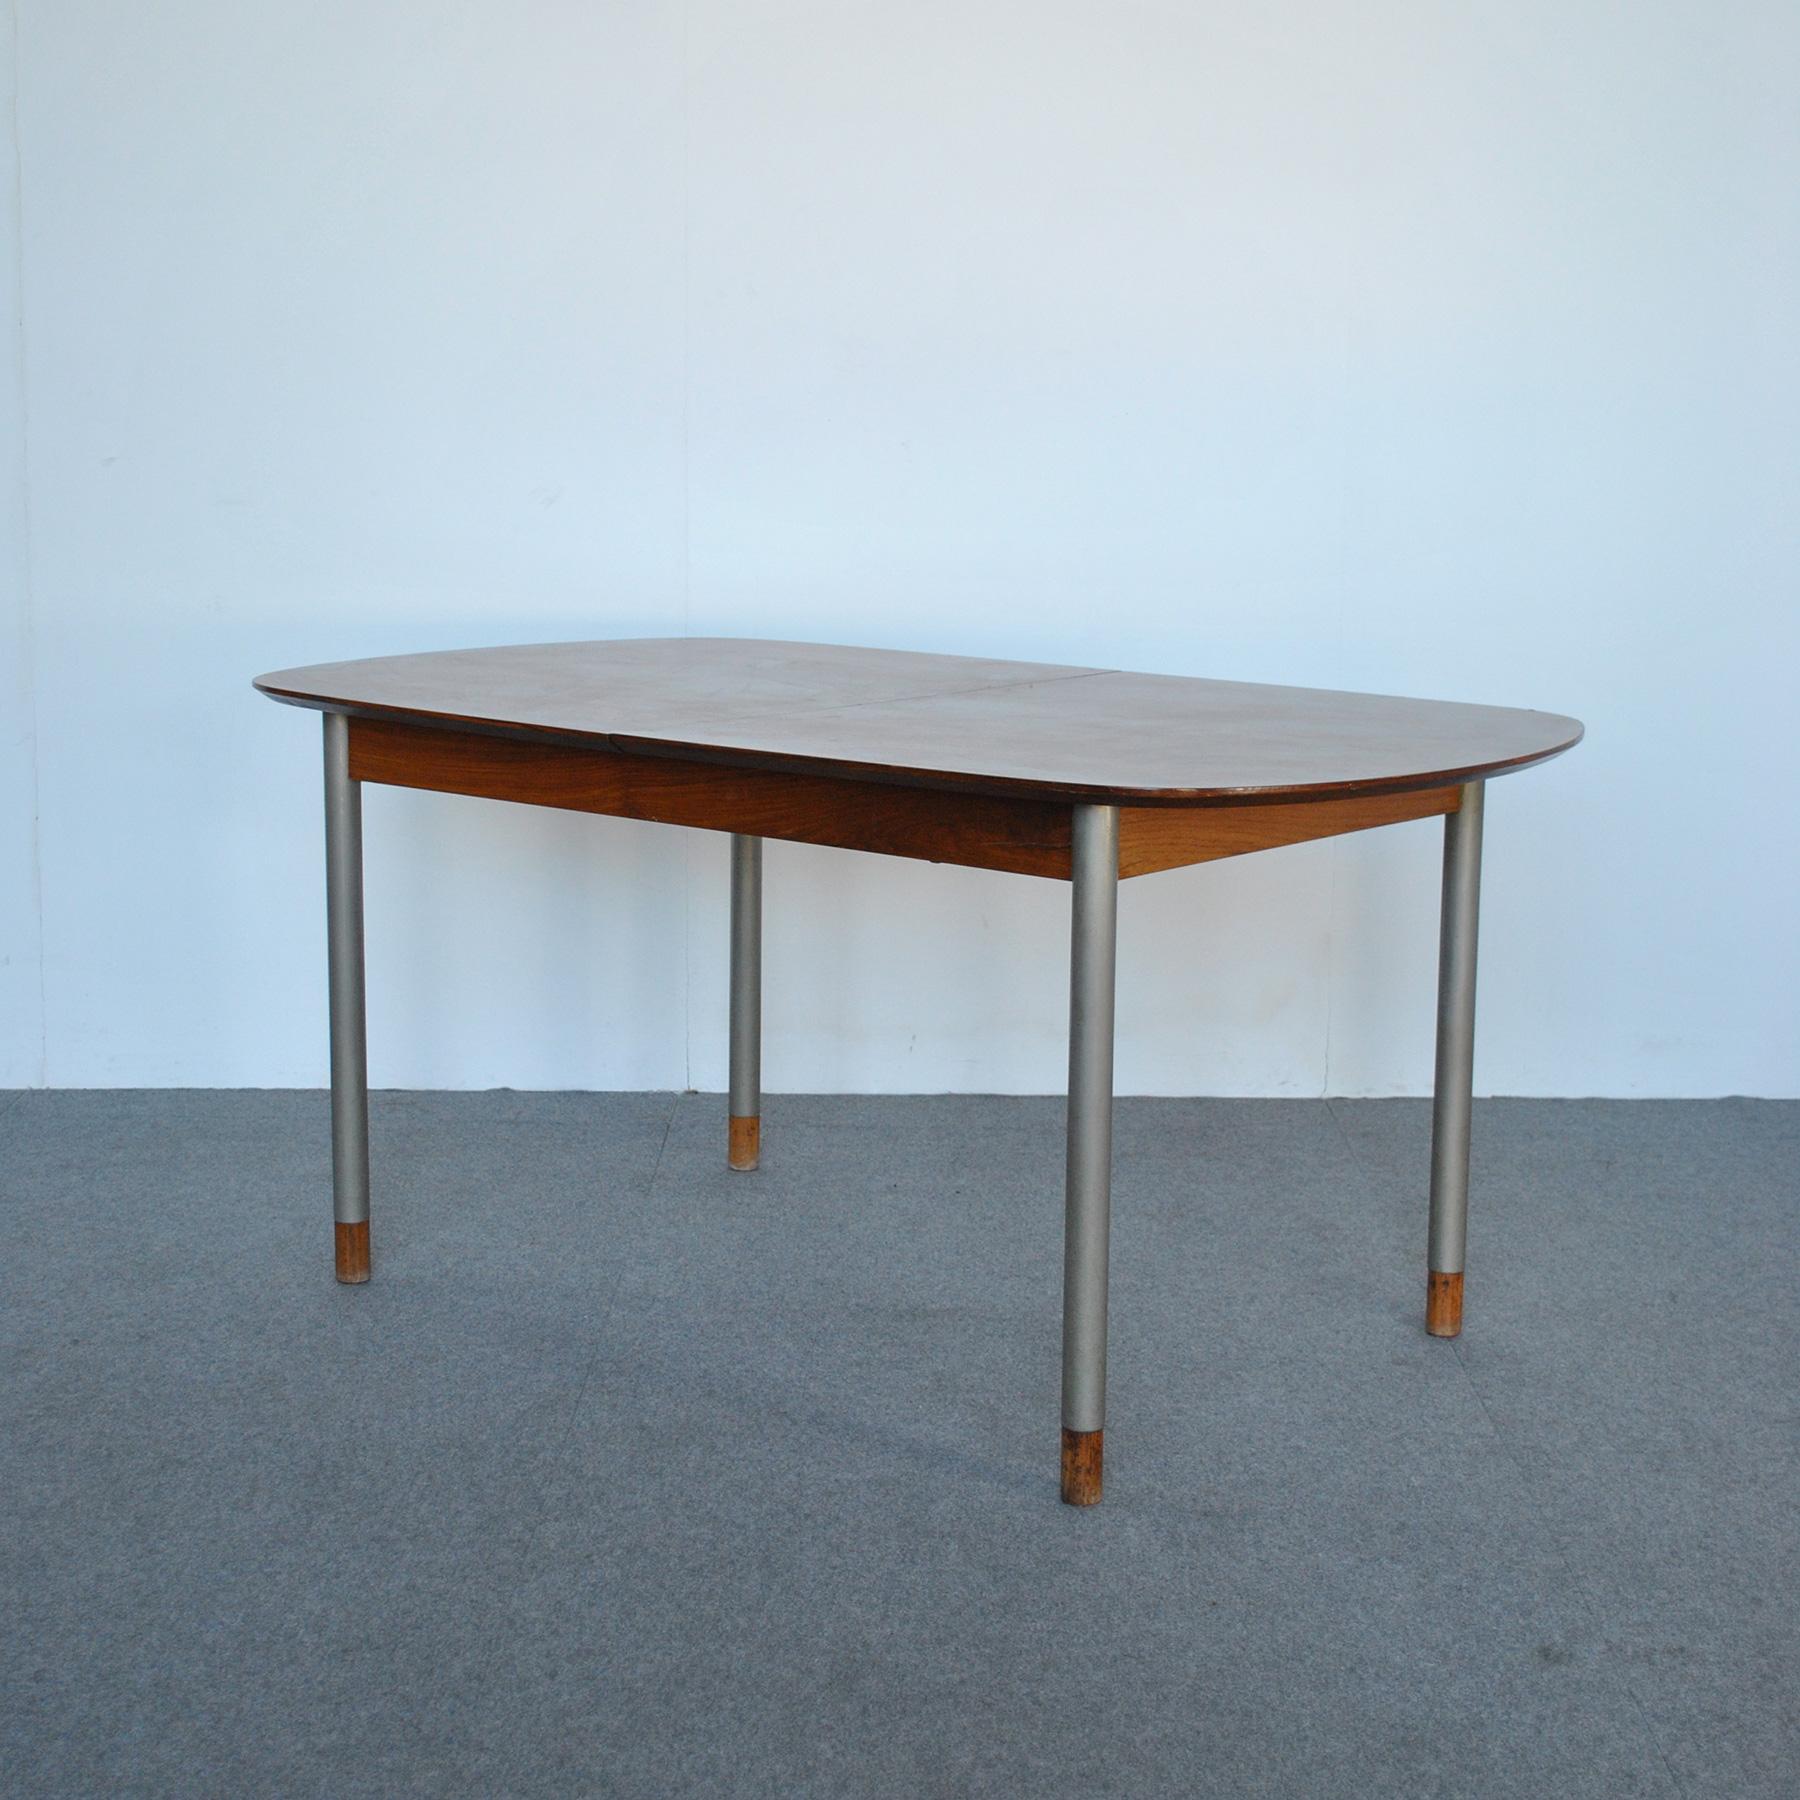 Tisch mit aufklappbarer Holzplatte und Metallbeinen mit Holzenden, Design George Coslin, Produktion 1960er Jahre. 
Der offene Tisch hat eine maximale Länge von 215 cm.